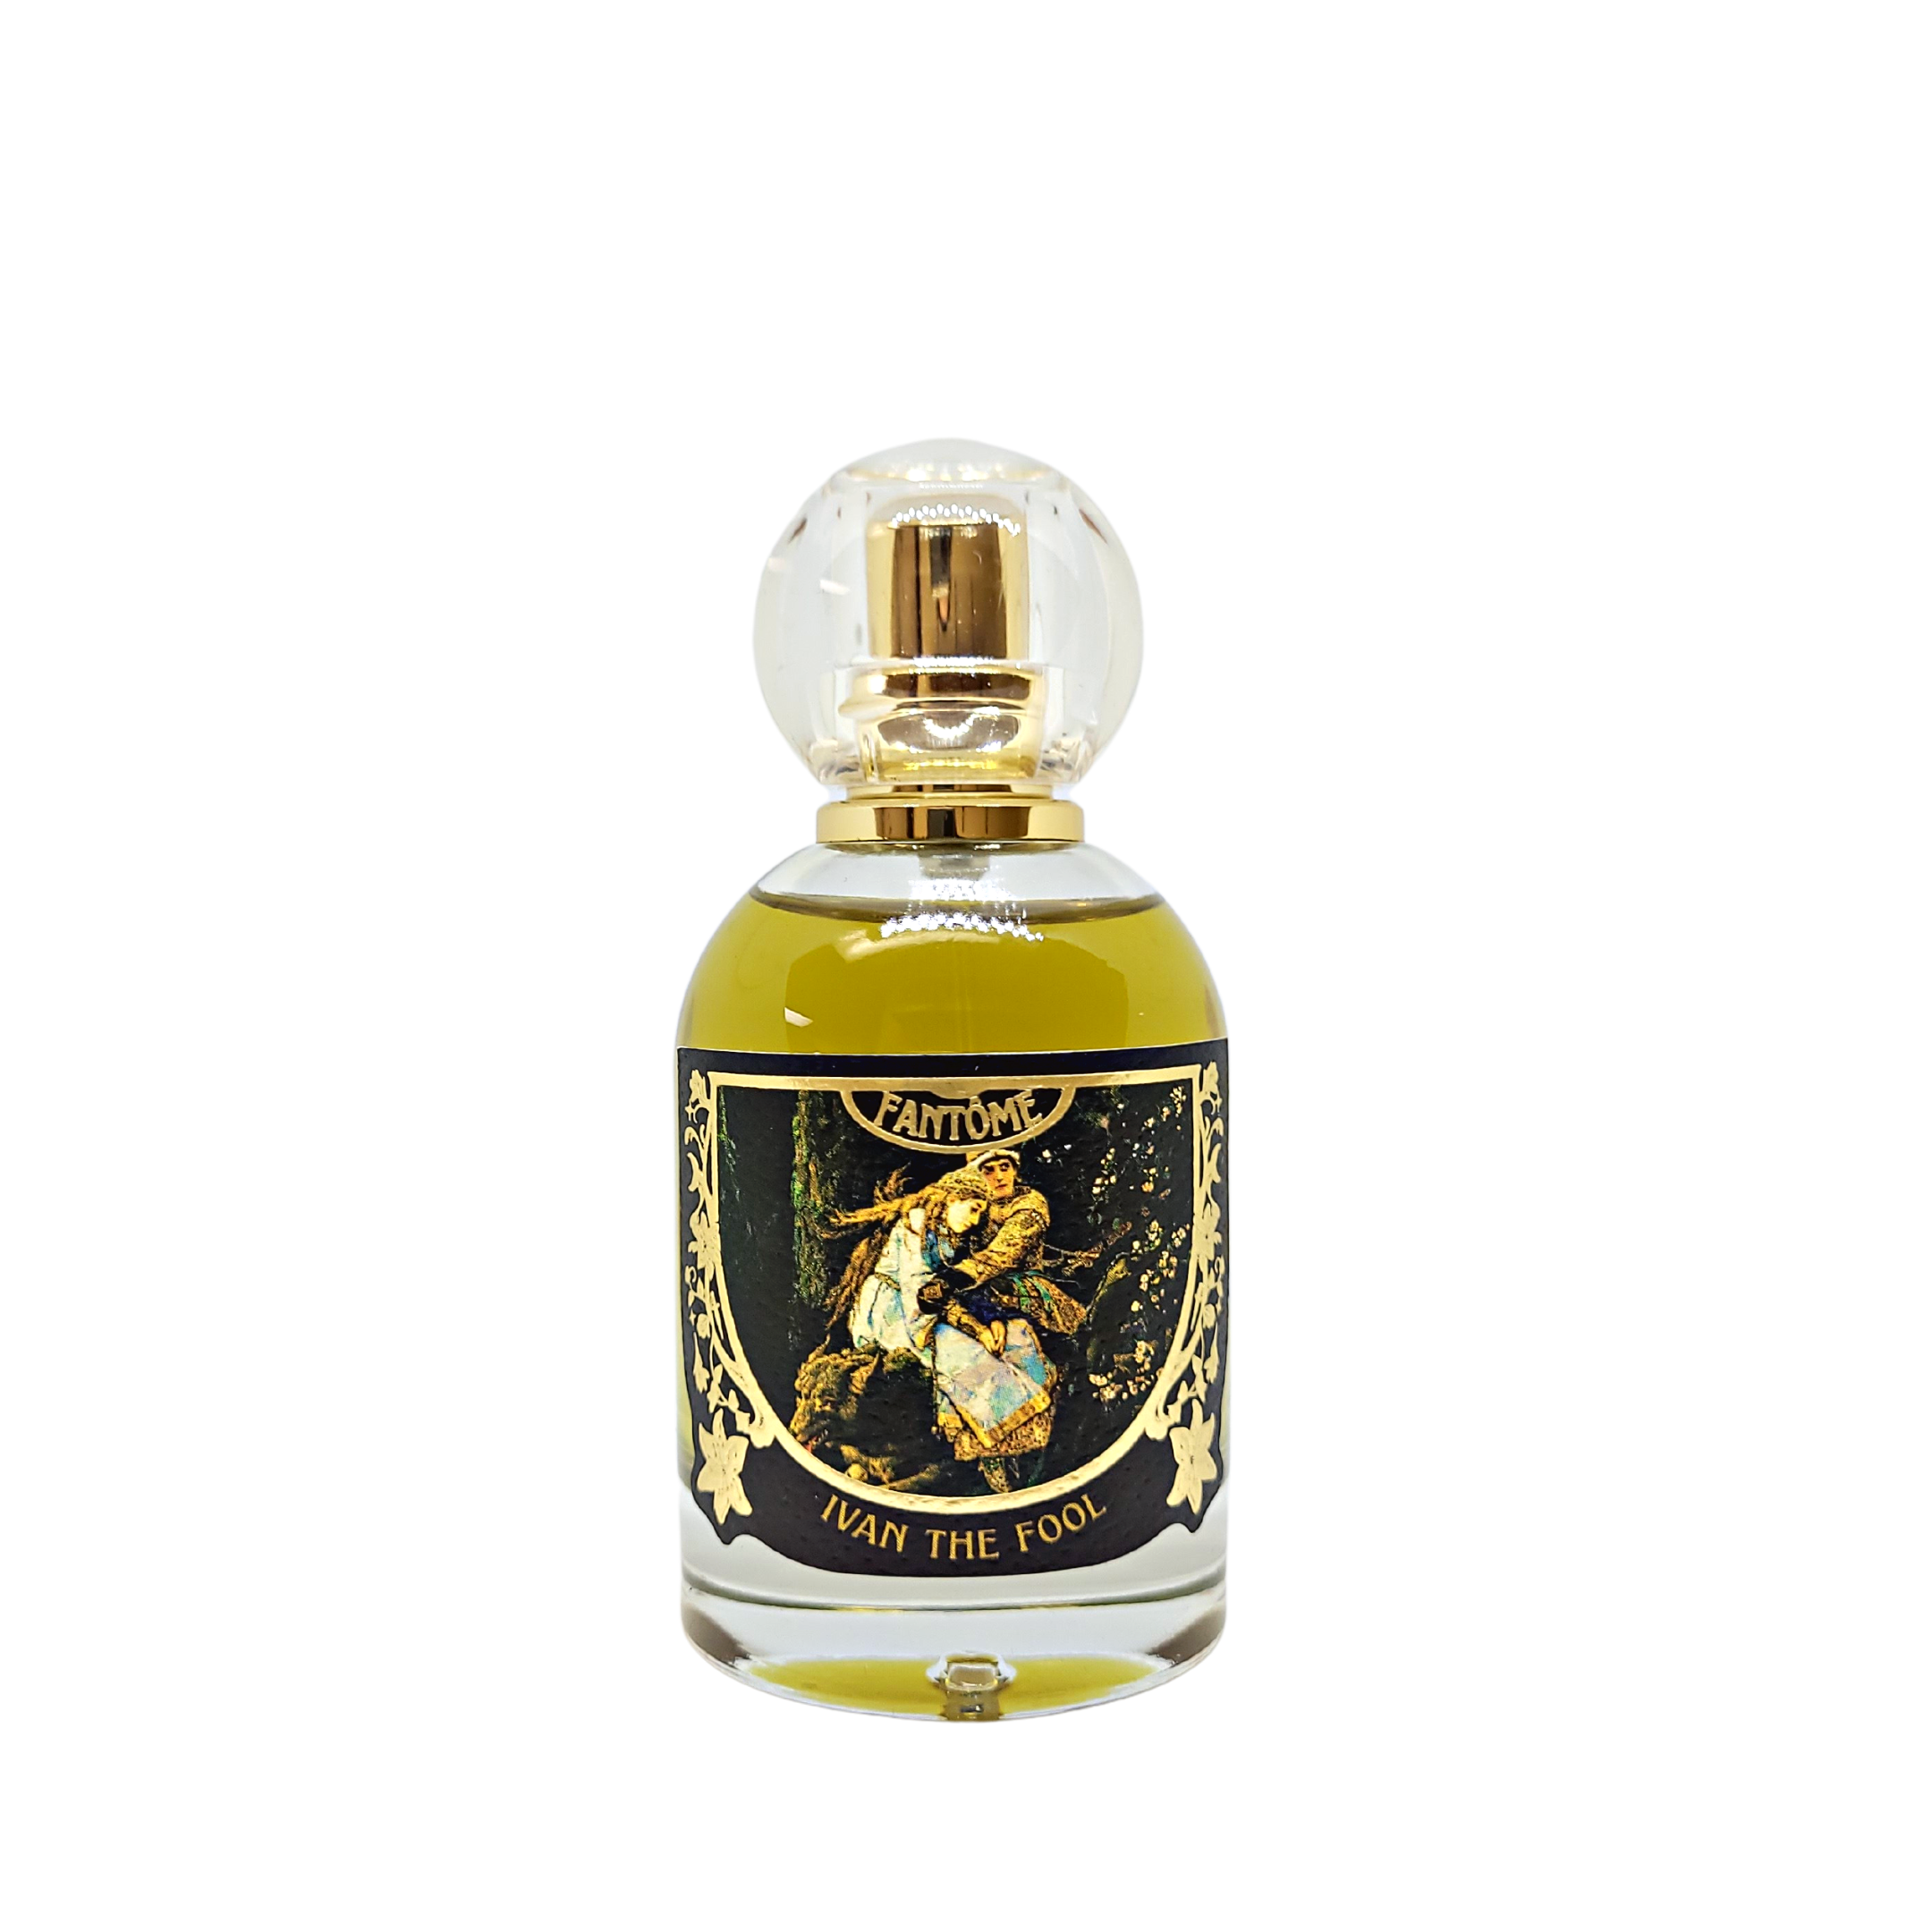 Ivan the Fool Extrait de Parfum